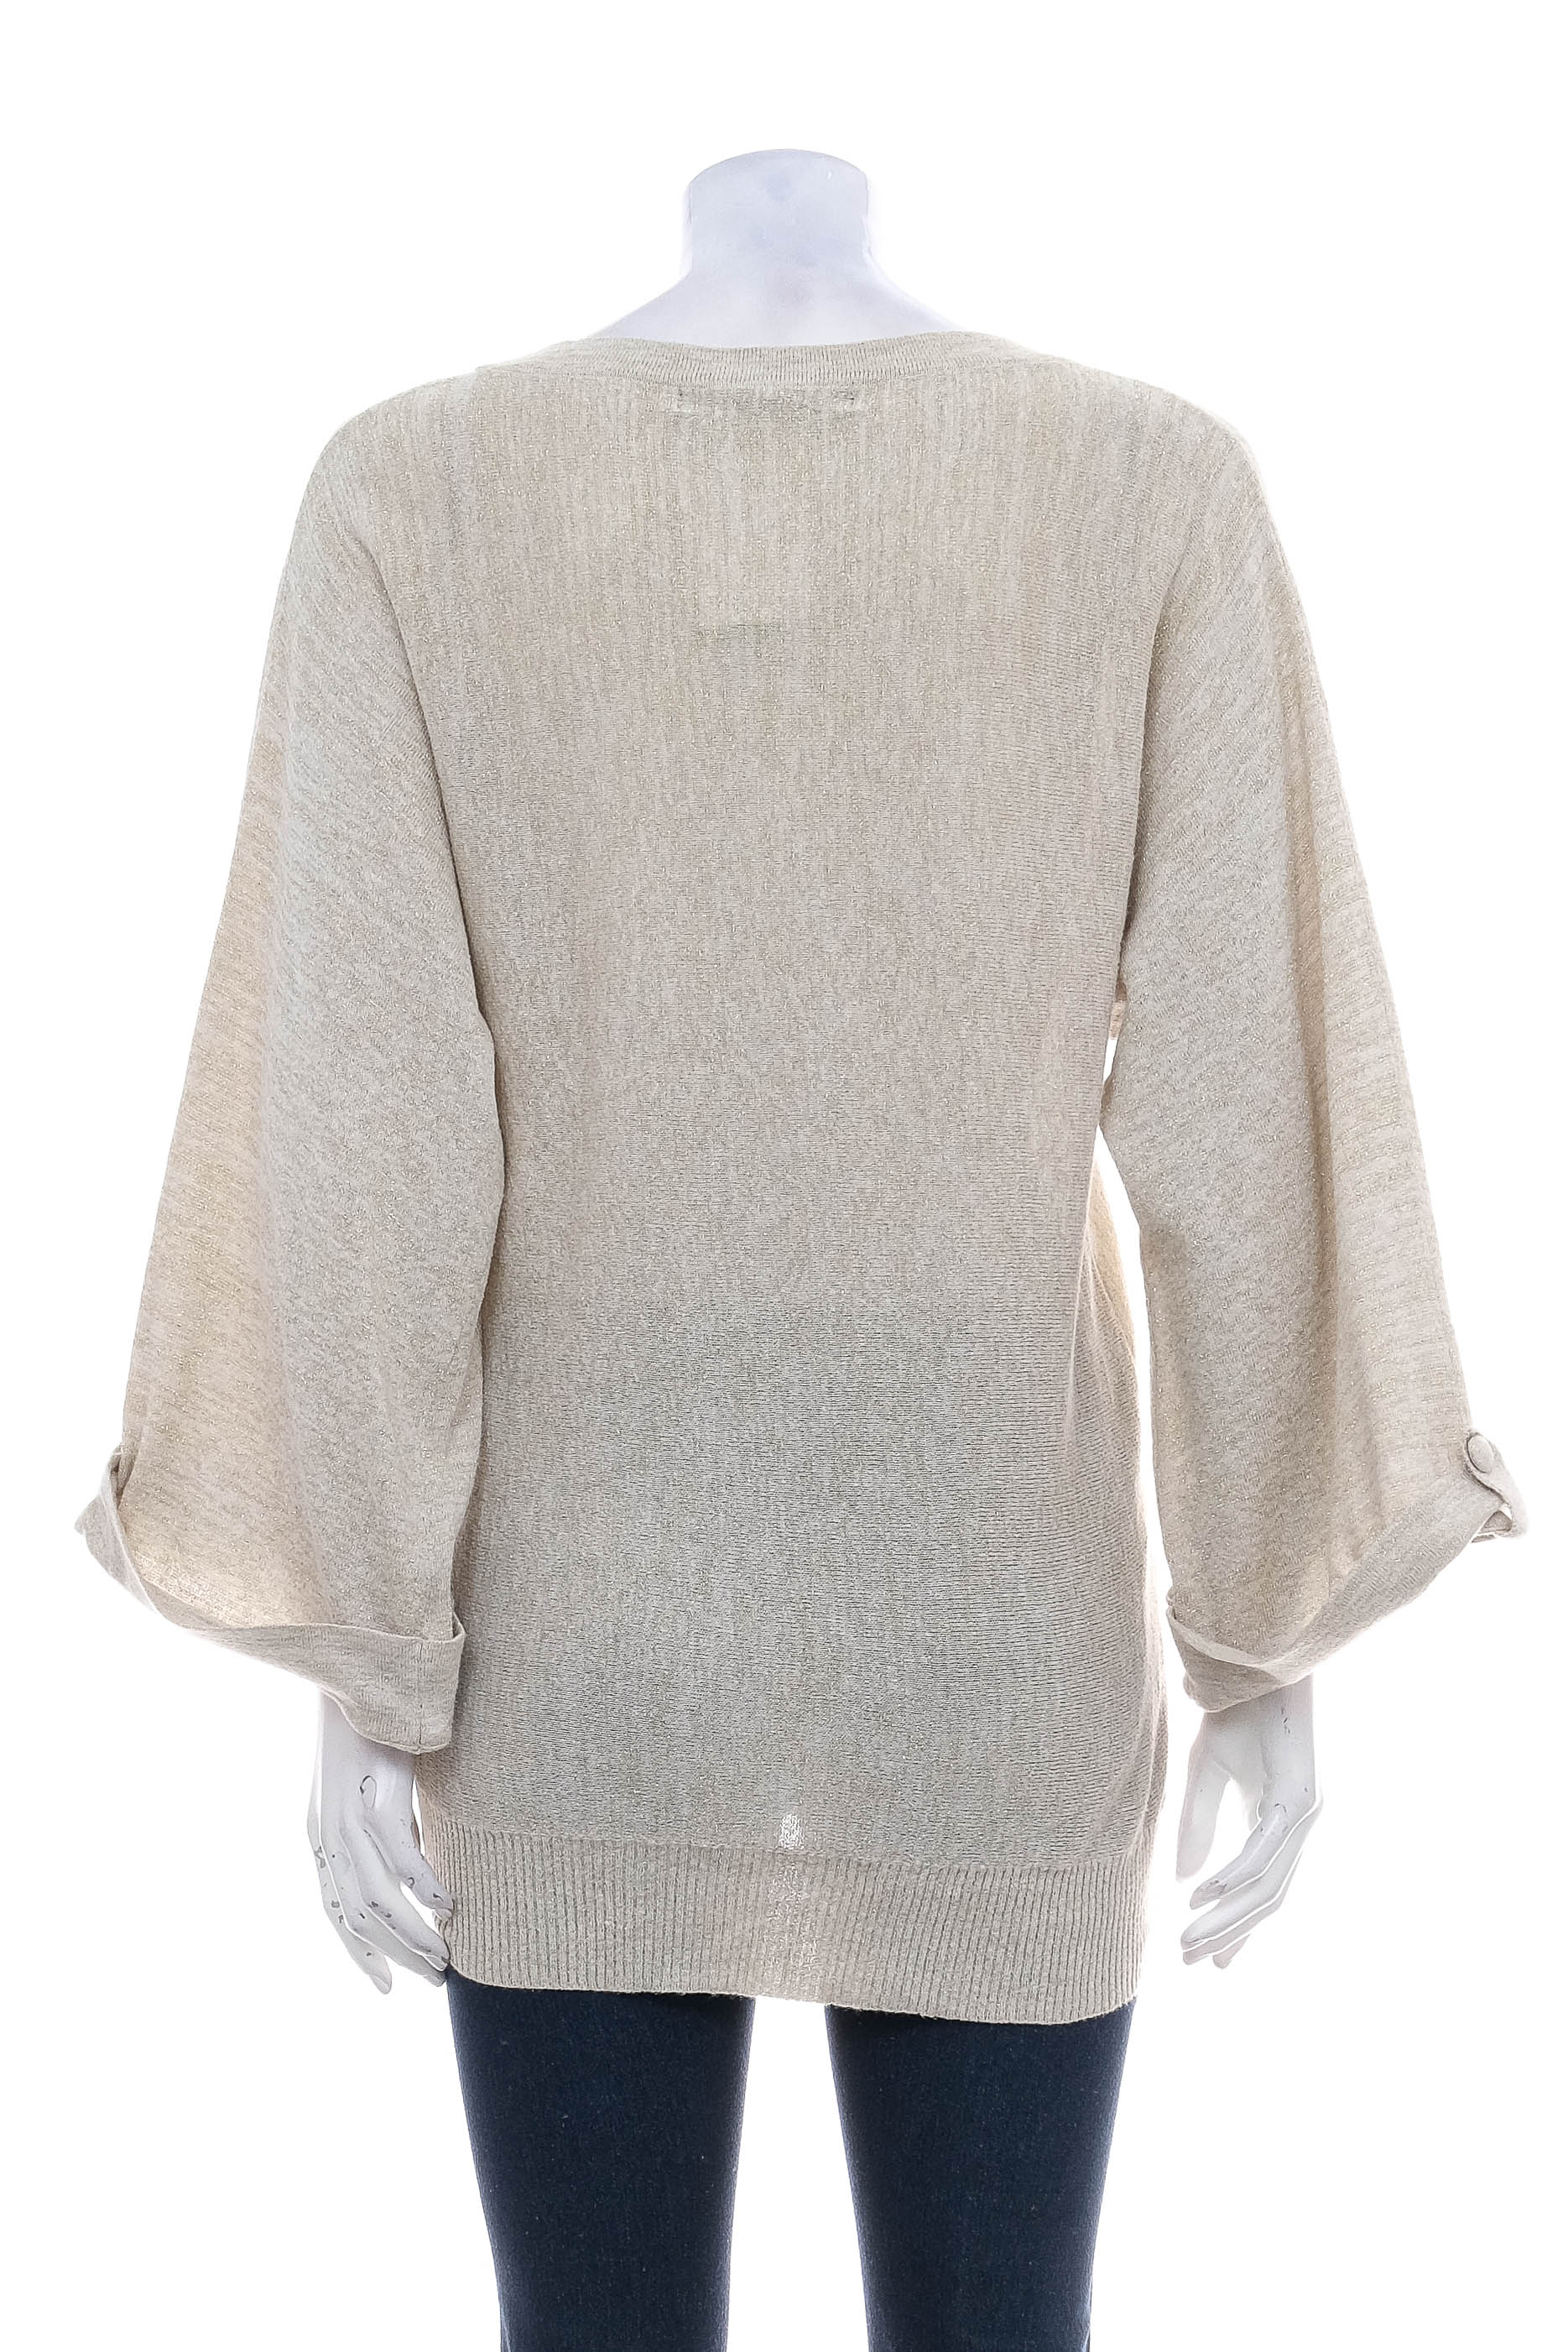 Women's sweater - Bedo - 1